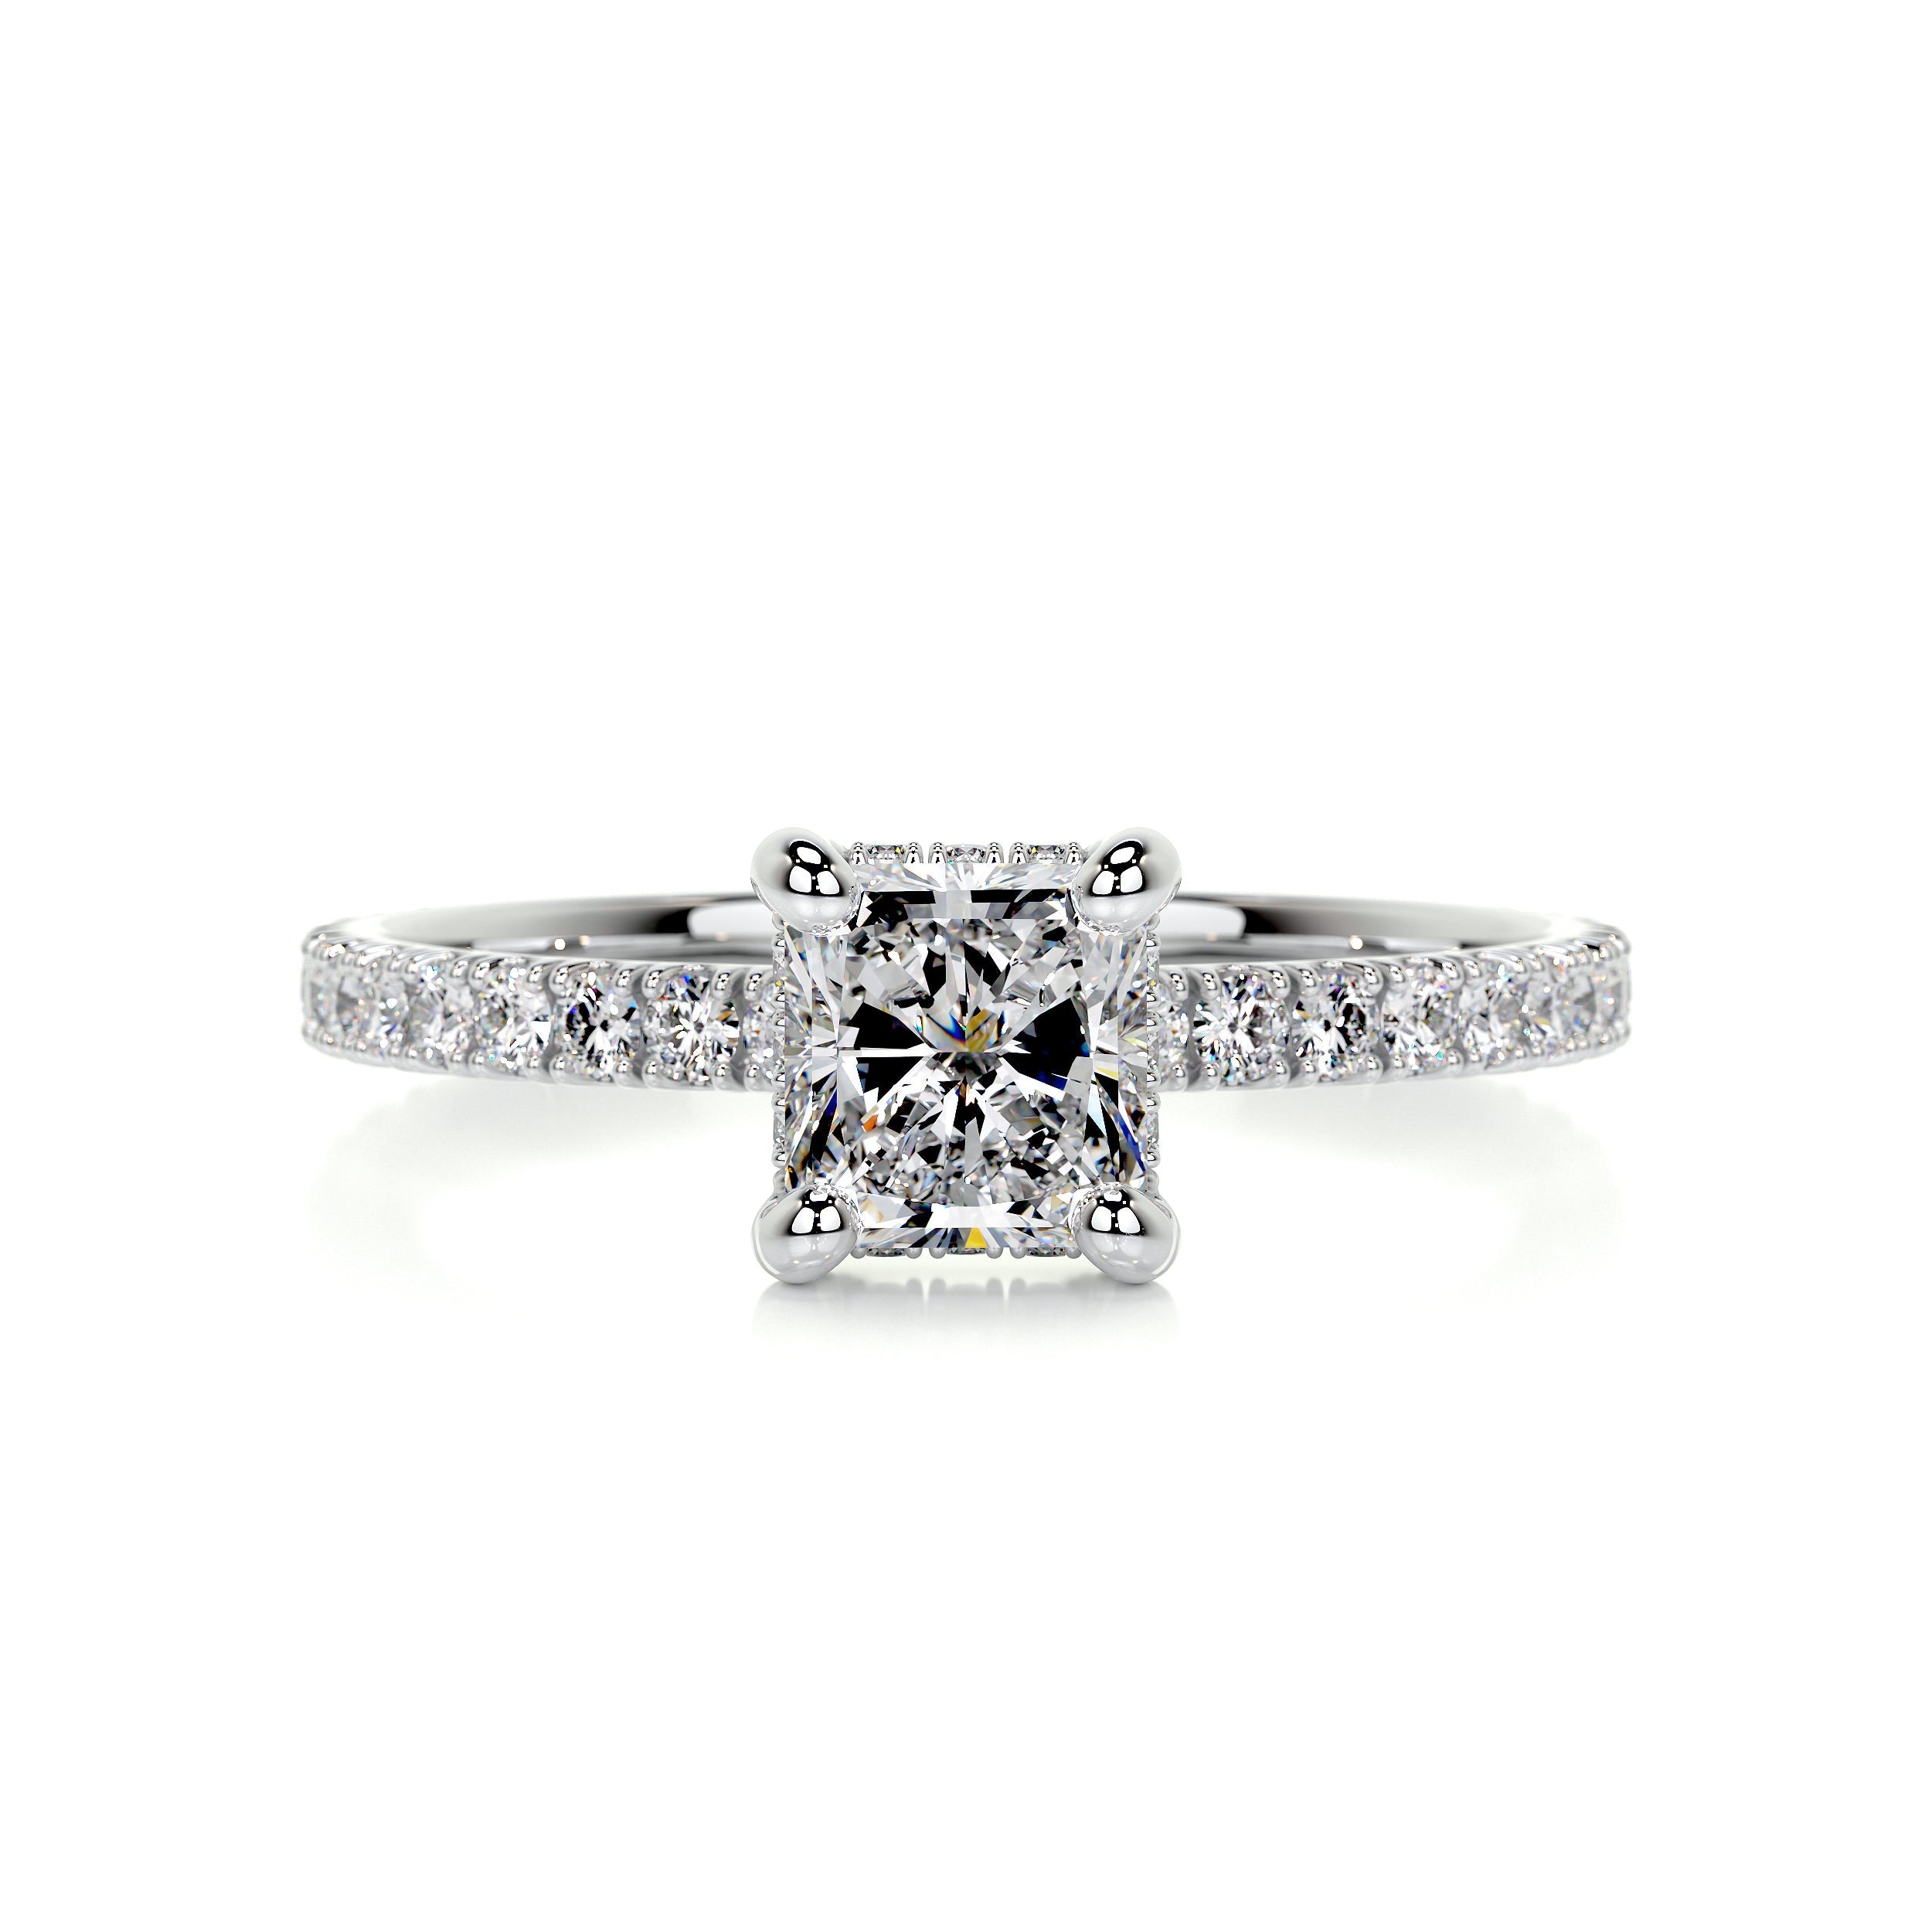 Deborah Diamond Engagement Ring   (1.50 Carat) -14K White Gold (RTS)